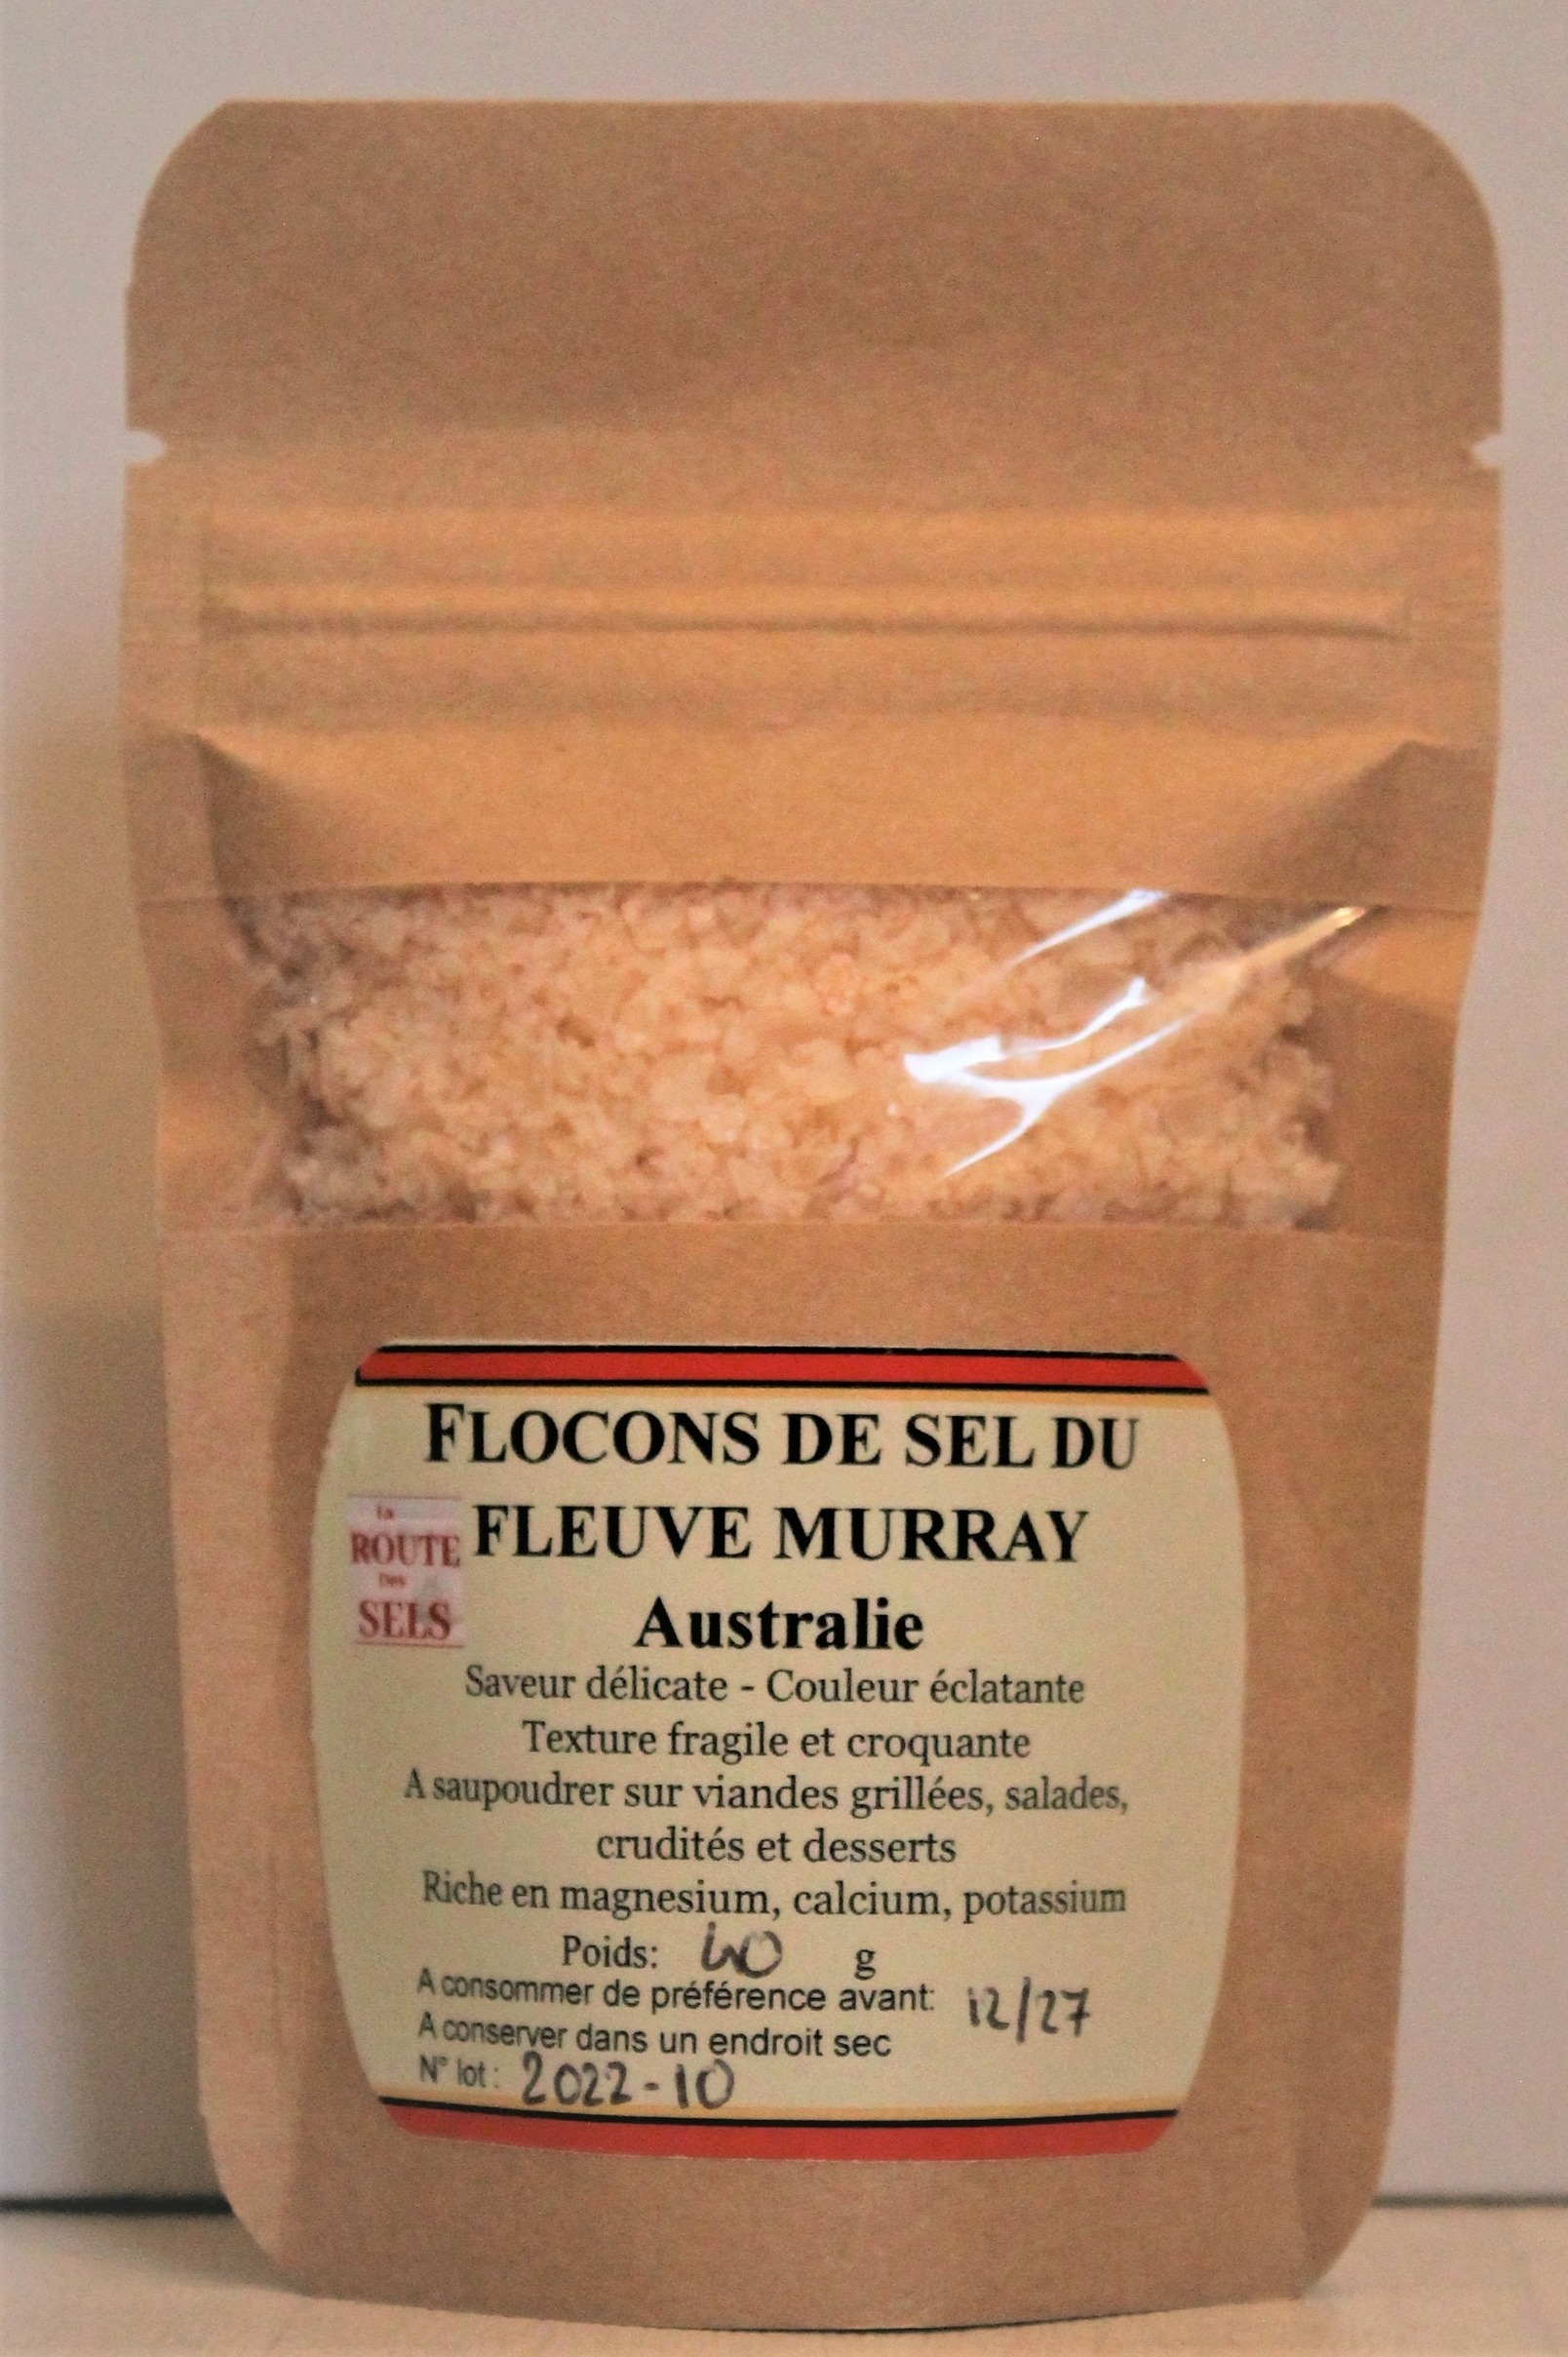 Flocons de sel gemme (100 g), fleurs de sel gemme, sel gemme